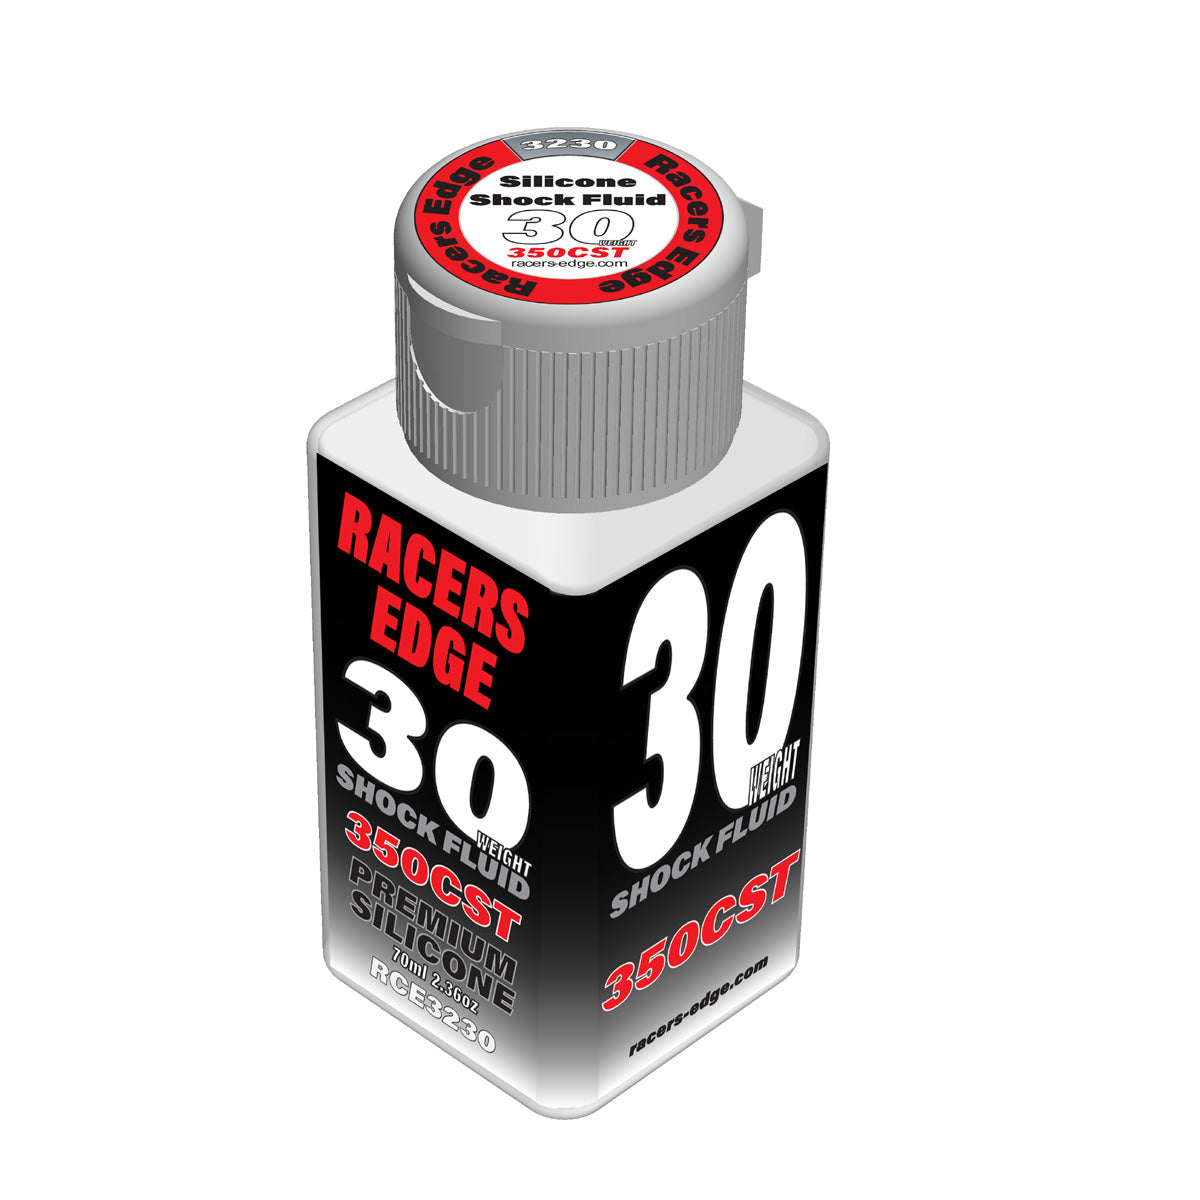 Racers Edge RCE3230 30 Poids, 350 cSt, 70 ml 2,36 oz Huile de choc en silicone pur